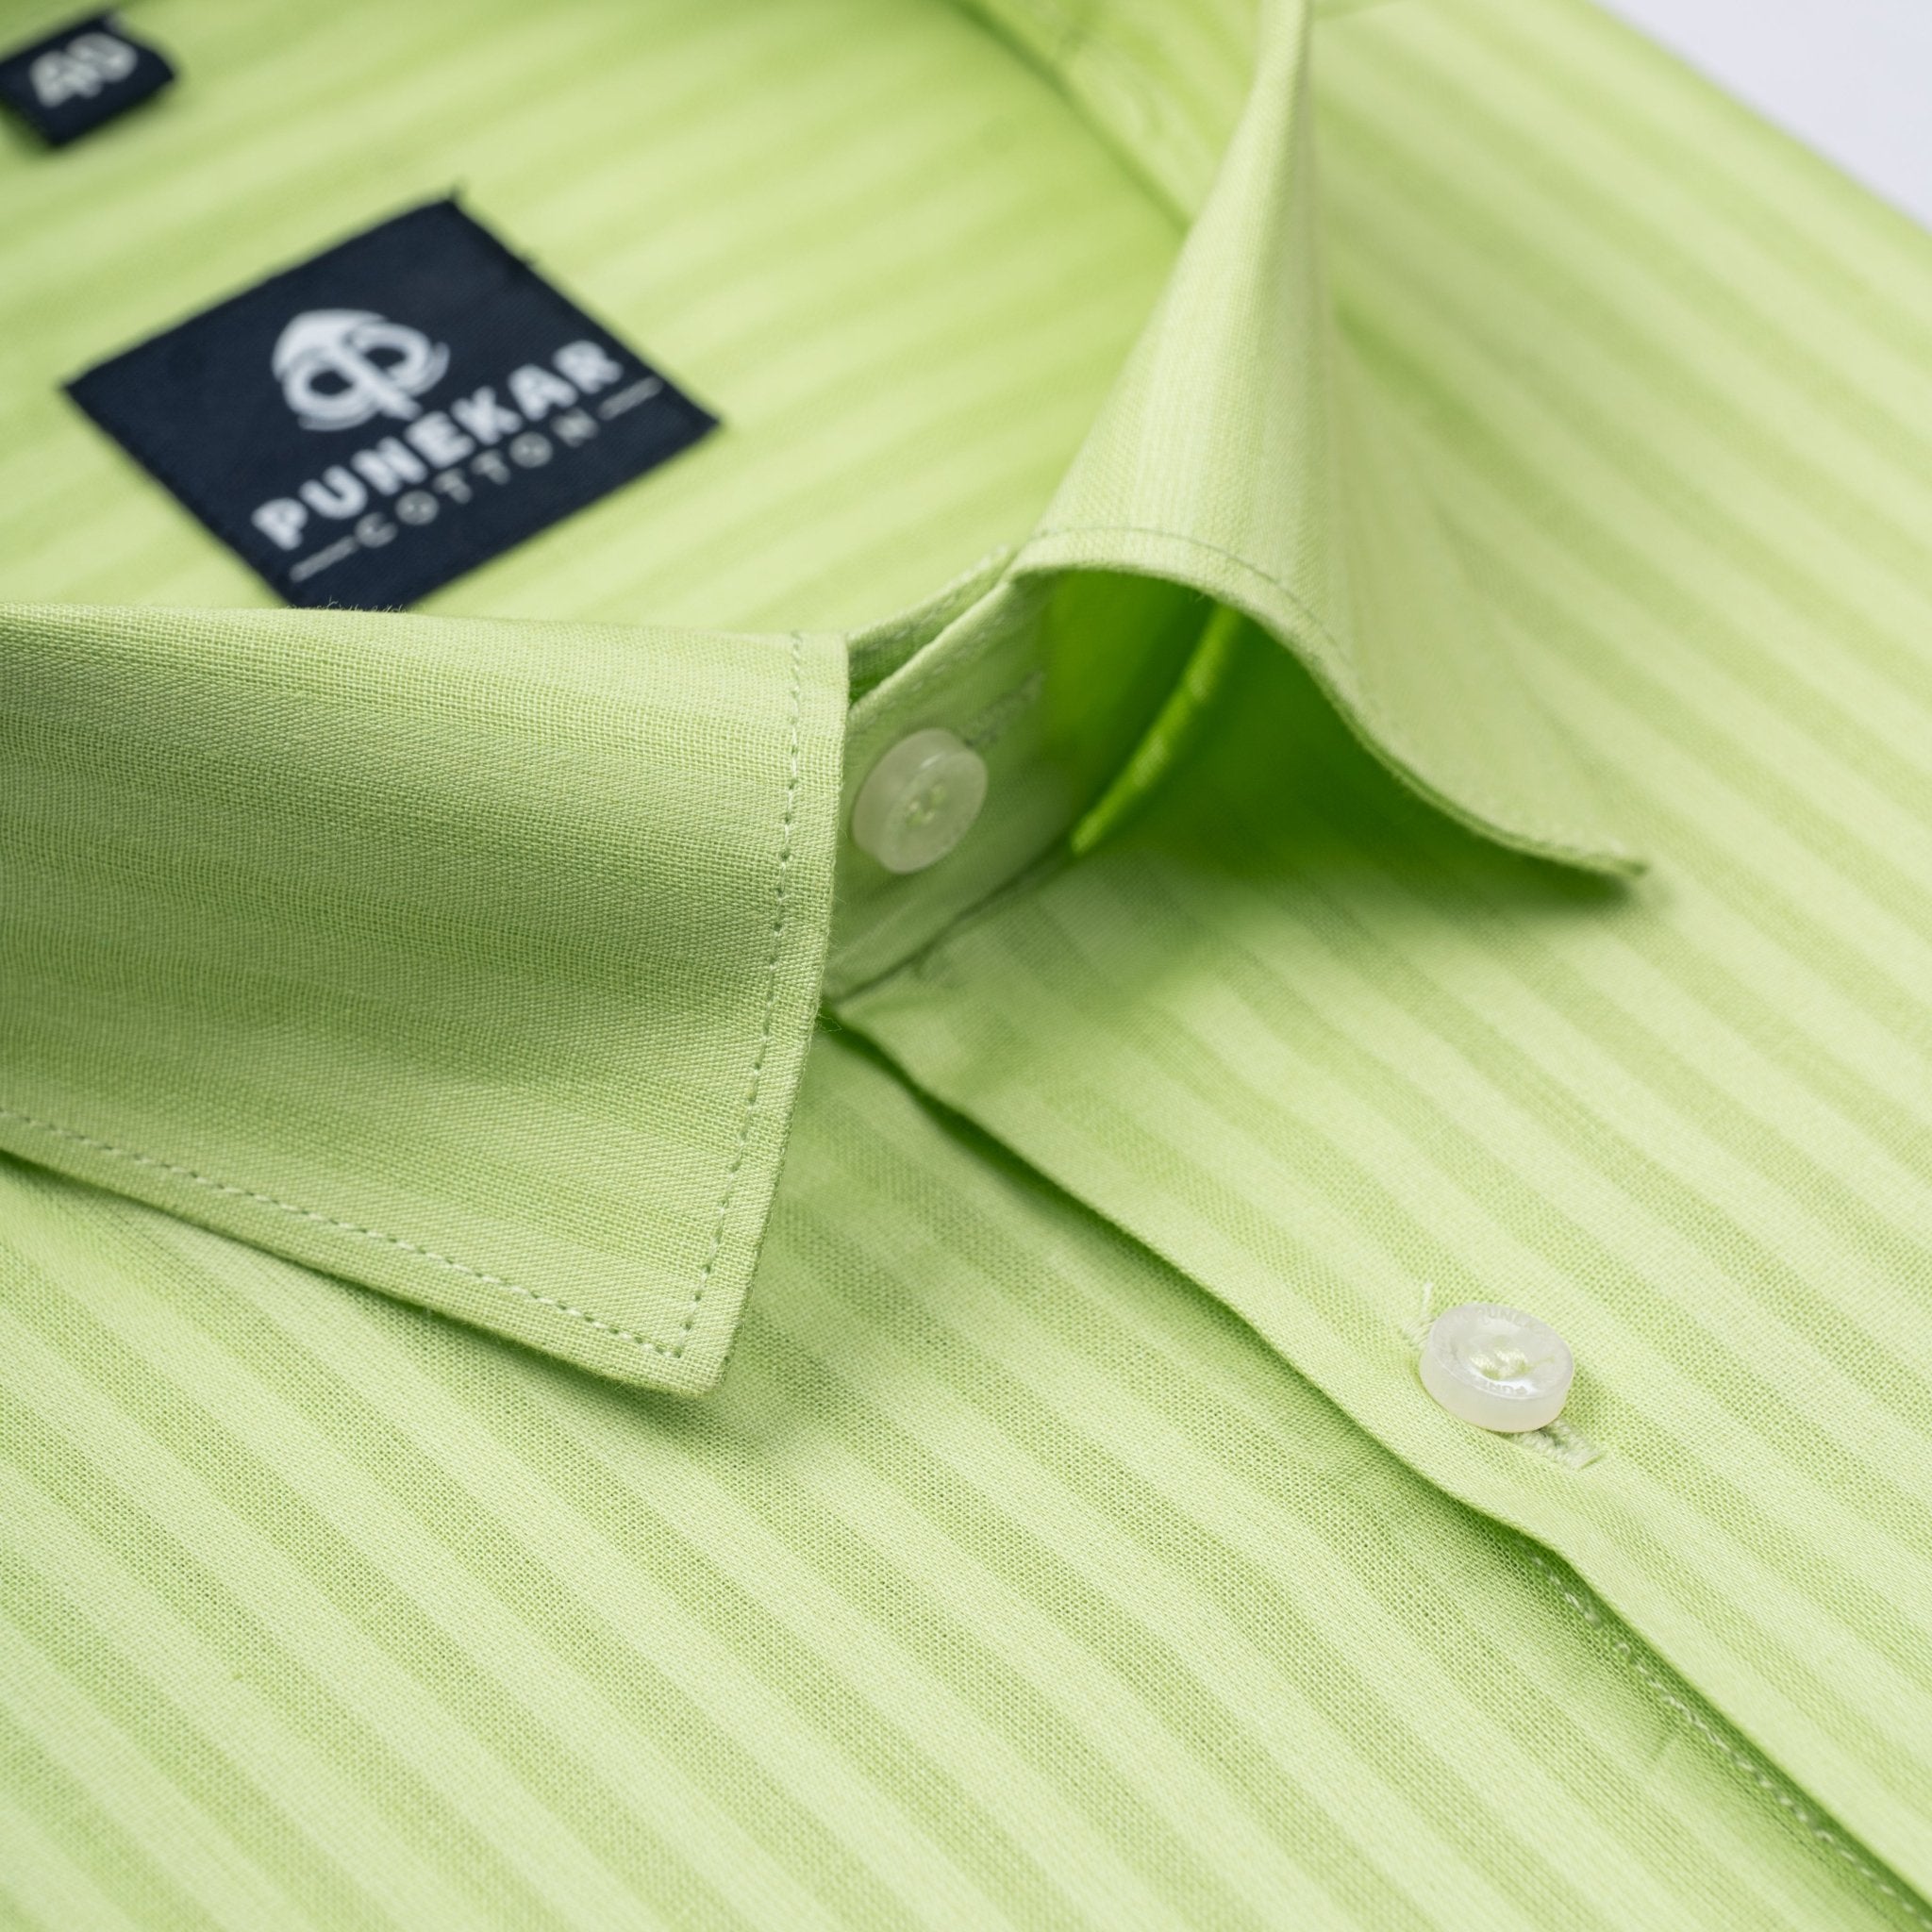 Light Green Color vertical Cotton stripe Shirt For Men - Punekar Cotton